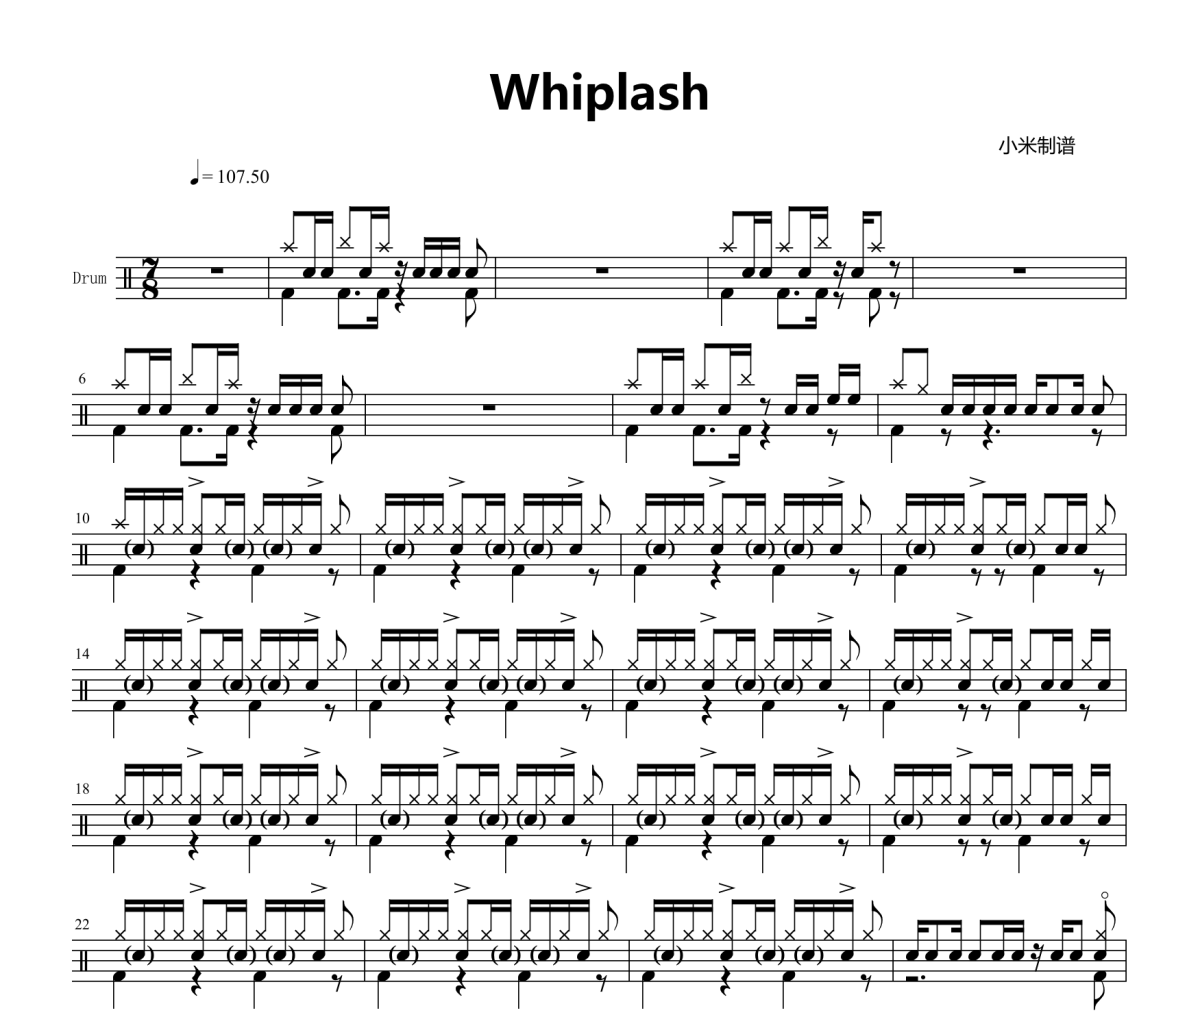 爆裂鼓手-whiplash架子鼓|爵士鼓|鼓谱+动态视频